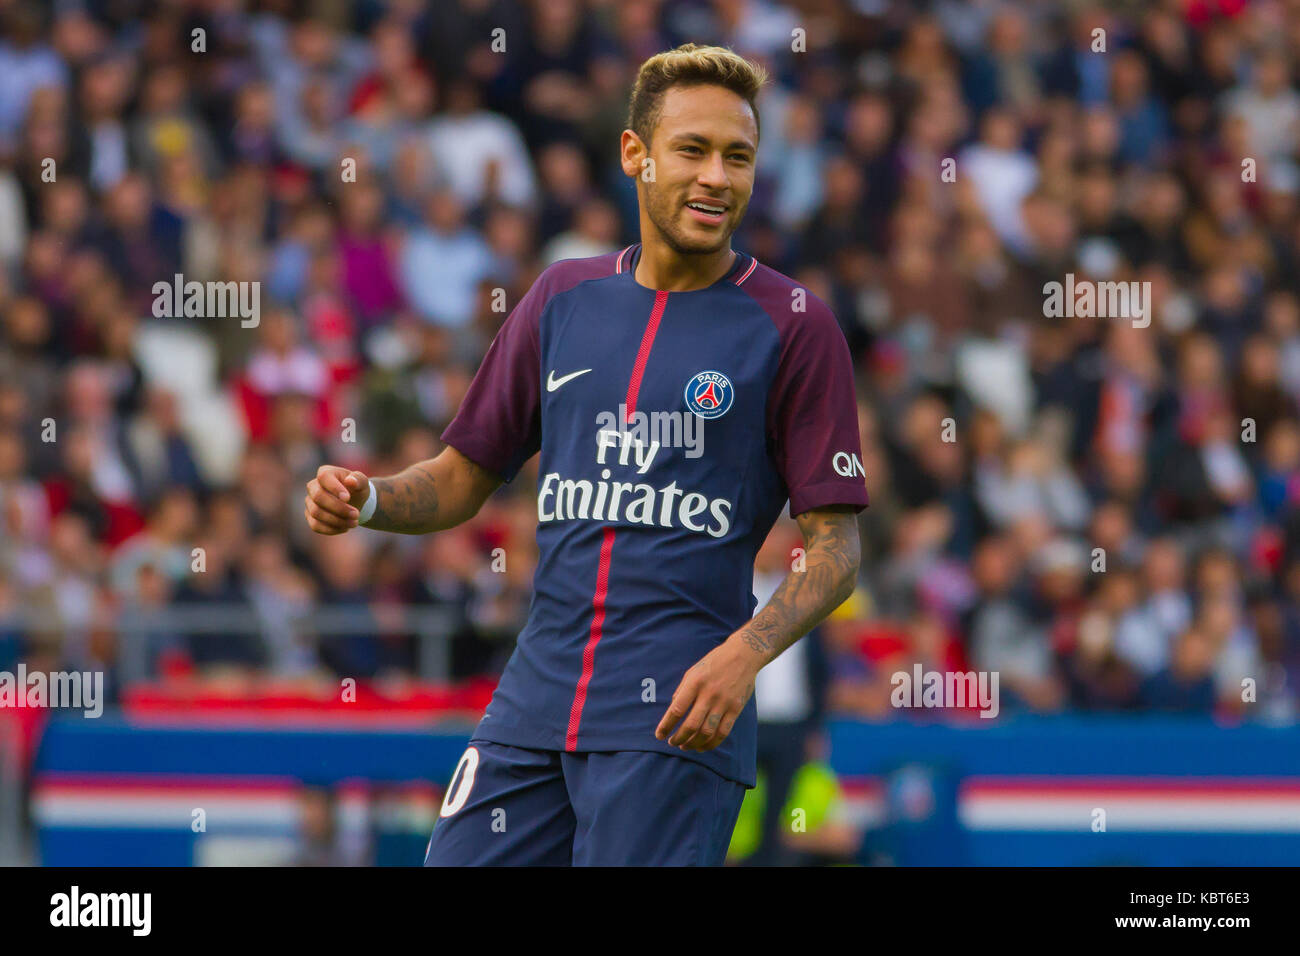 Neymar Jr. during the French Ligue 1 soccer match between Paris Saint Germain (PSG) and Bordeaux at Parc des Princes. The match was won 6-2 by Paris Saint Germain. Stock Photo